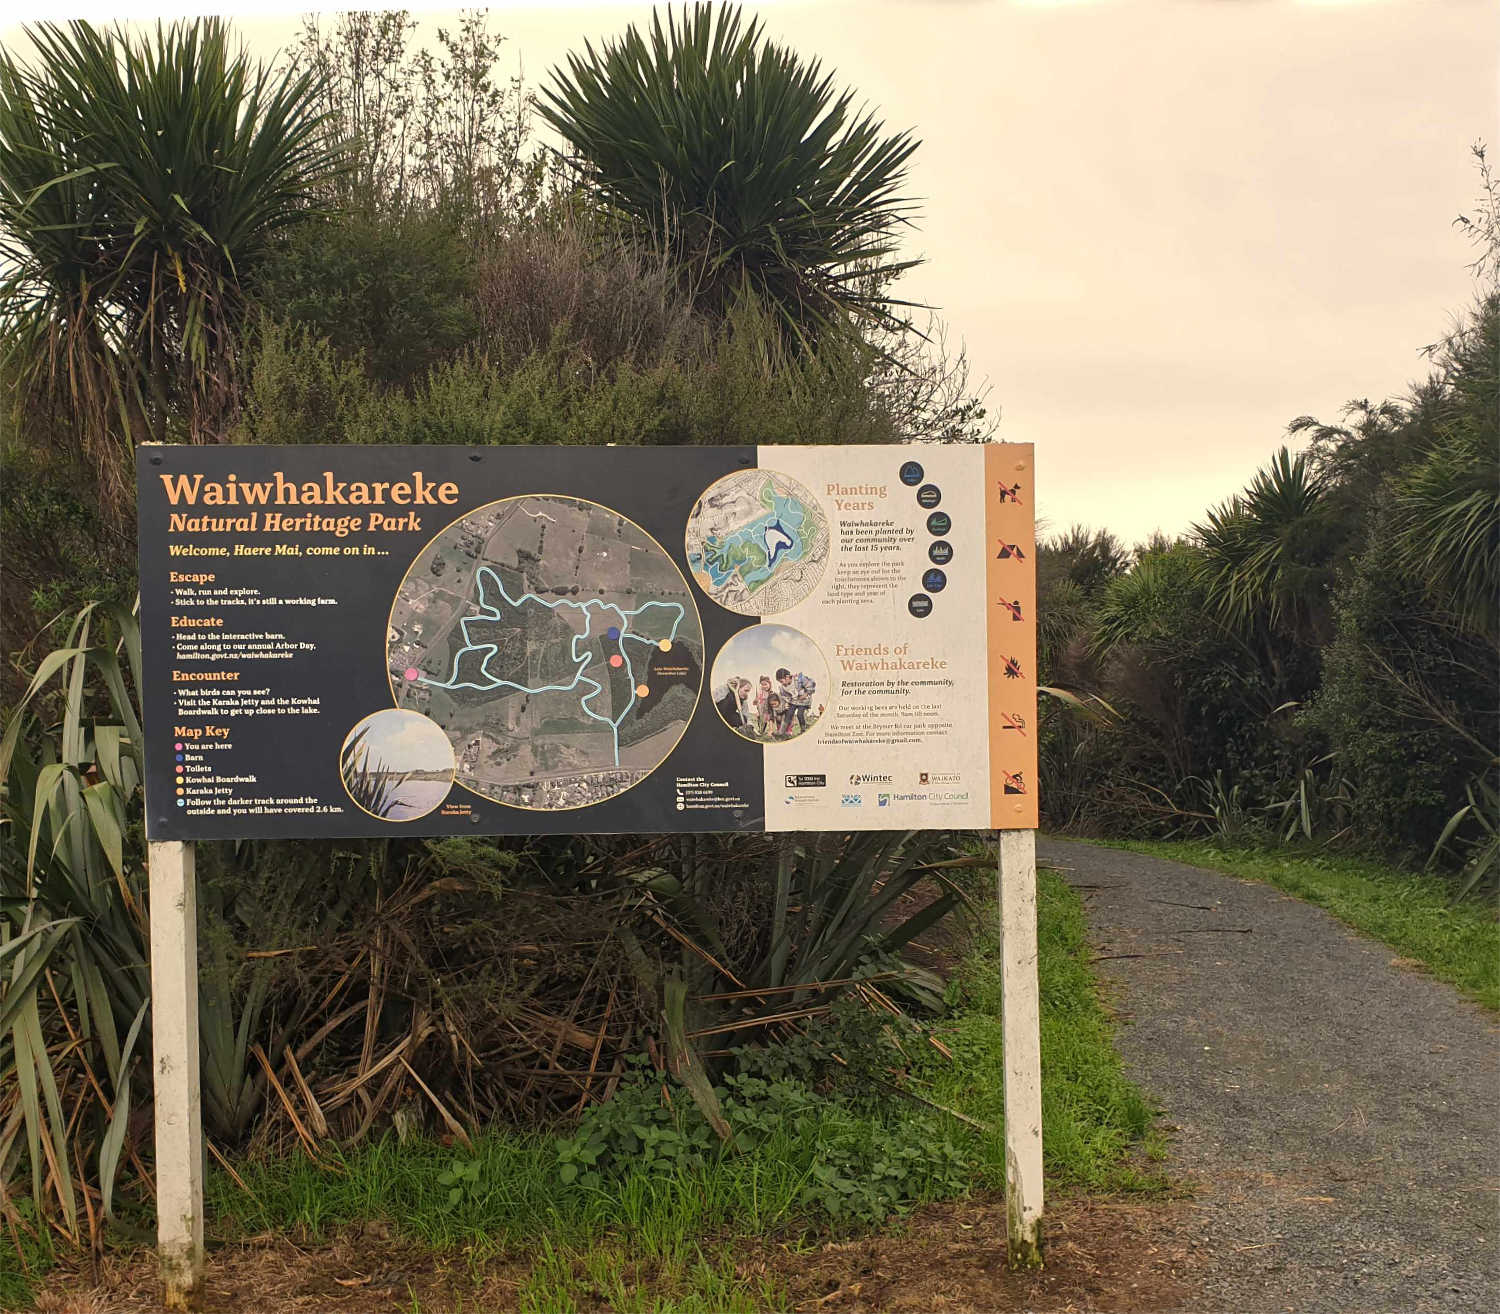 Waiwhakareke wetland entrance, Waikato, New Zealand